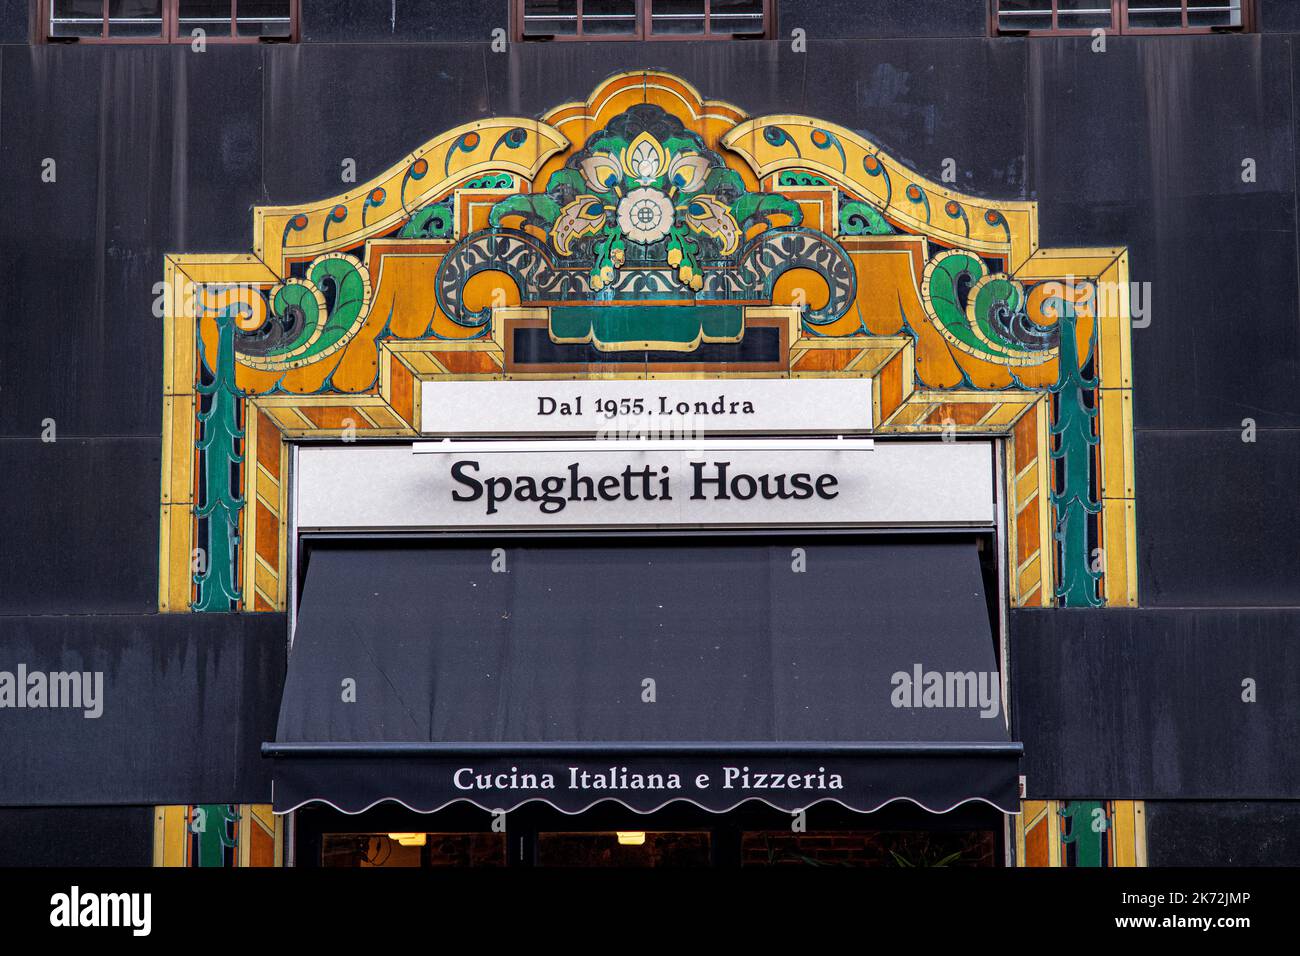 Spaghetti House Argyll Street London - Argyll St ist eine von mehreren zentralen Londoner Filialen der 1955 gegründeten Restaurantkette Spaghetti House. Stockfoto